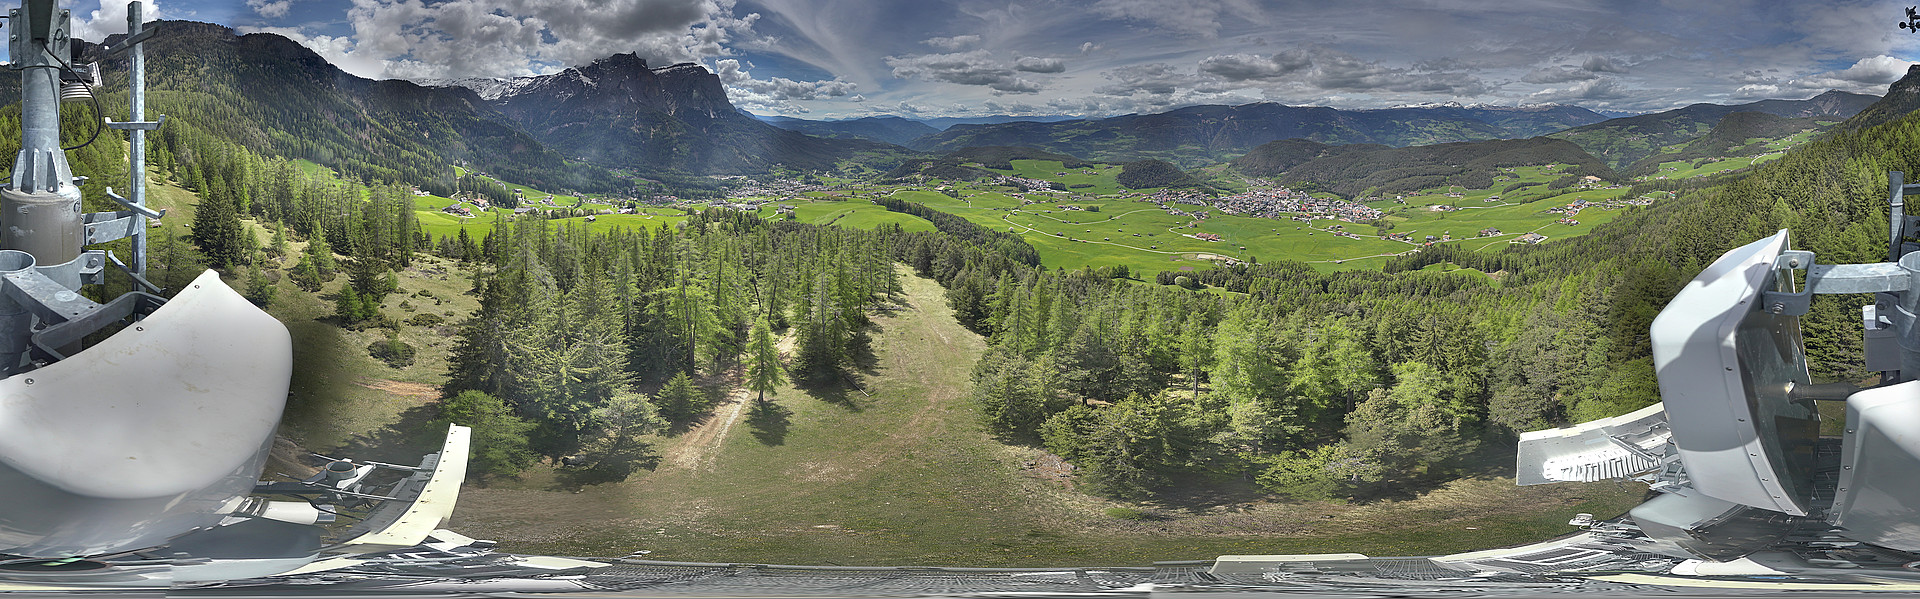 Webcam <br><span>Castelrotto - Panorama 360°</span>